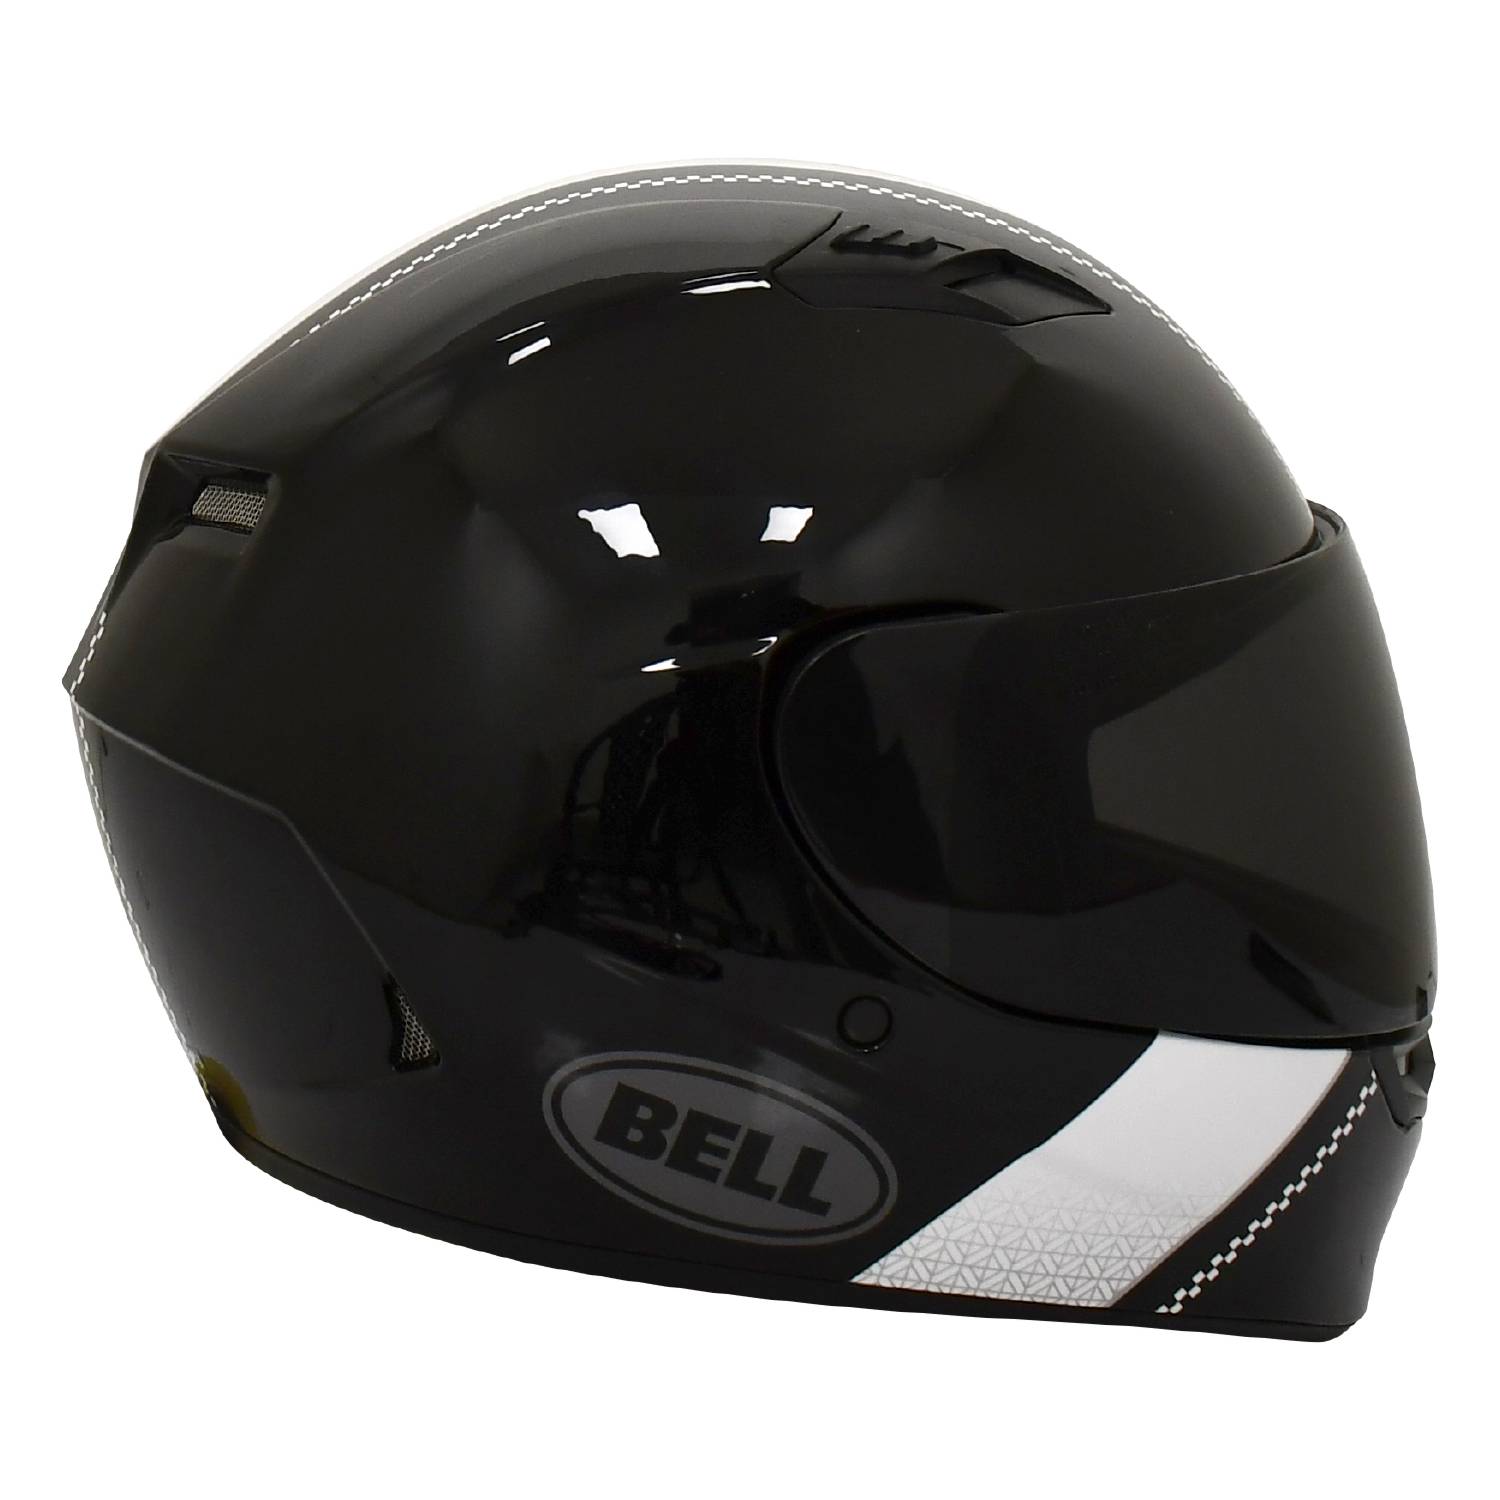 Bell Helmets Colombia  Cascos para motos y bicicletas